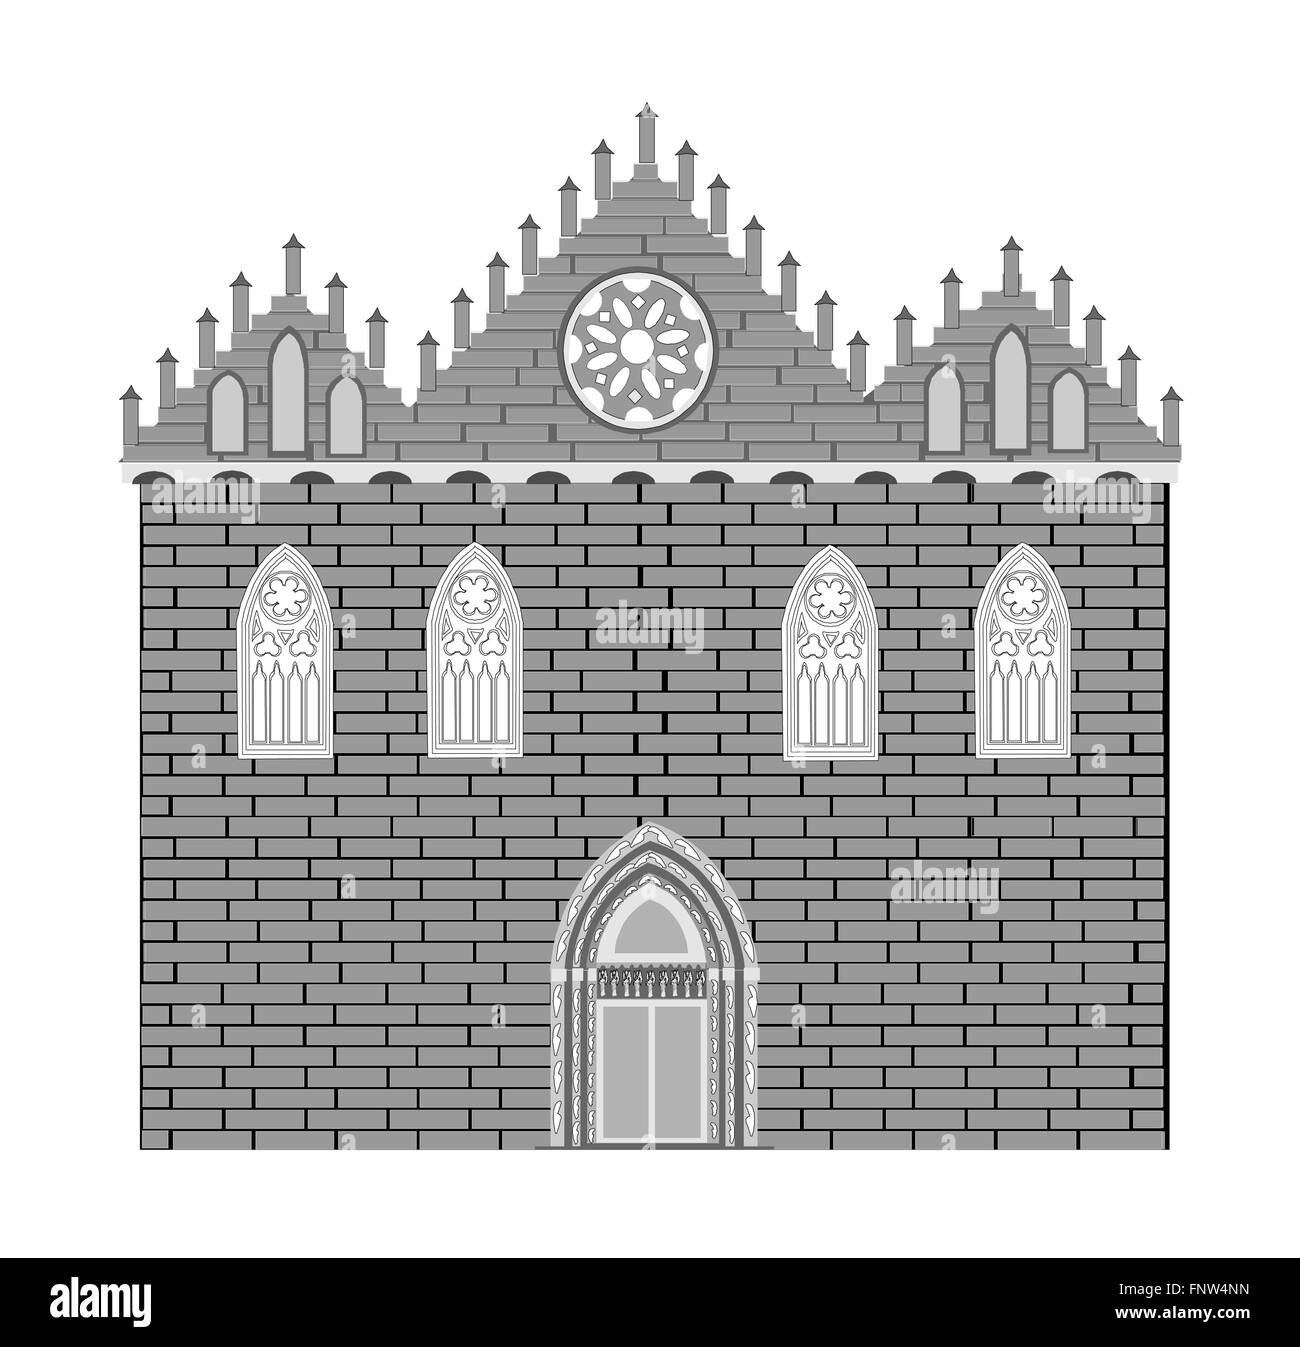 La arquitectura de estilo gótico Foto de stock